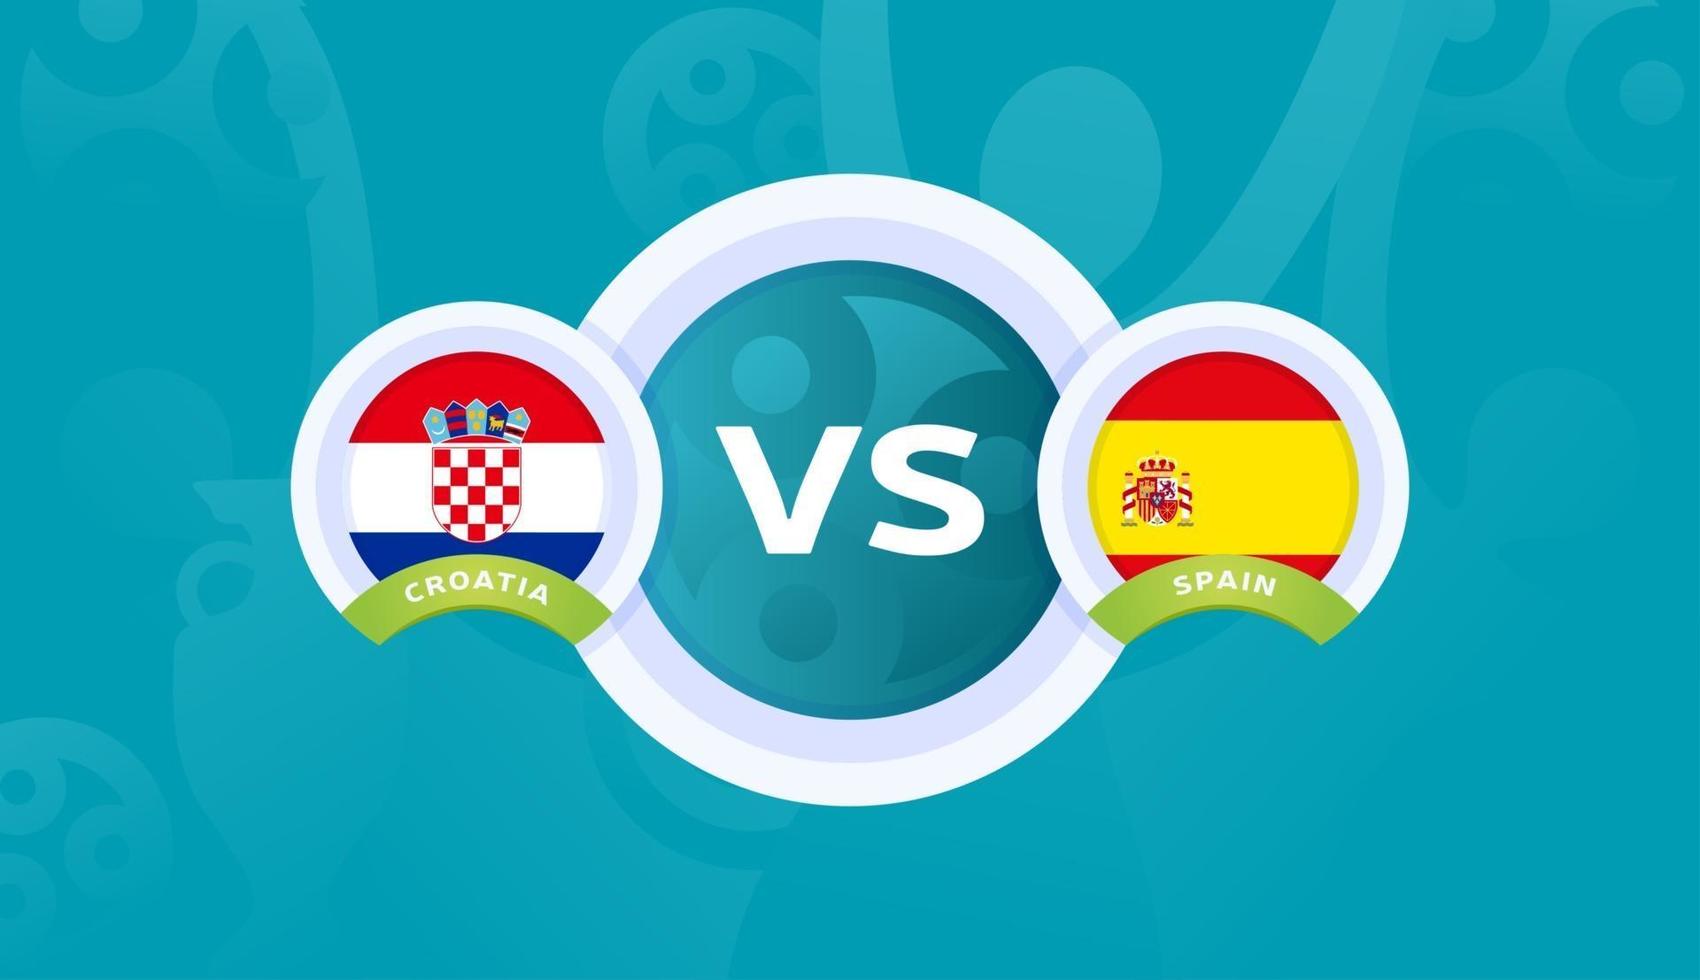 Kroatien vs Spanien runda 16-match, fotbolls-EM 2020-vektorillustration. fotboll 2020 mästerskapsmatch kontra lag intro sport bakgrund vektor